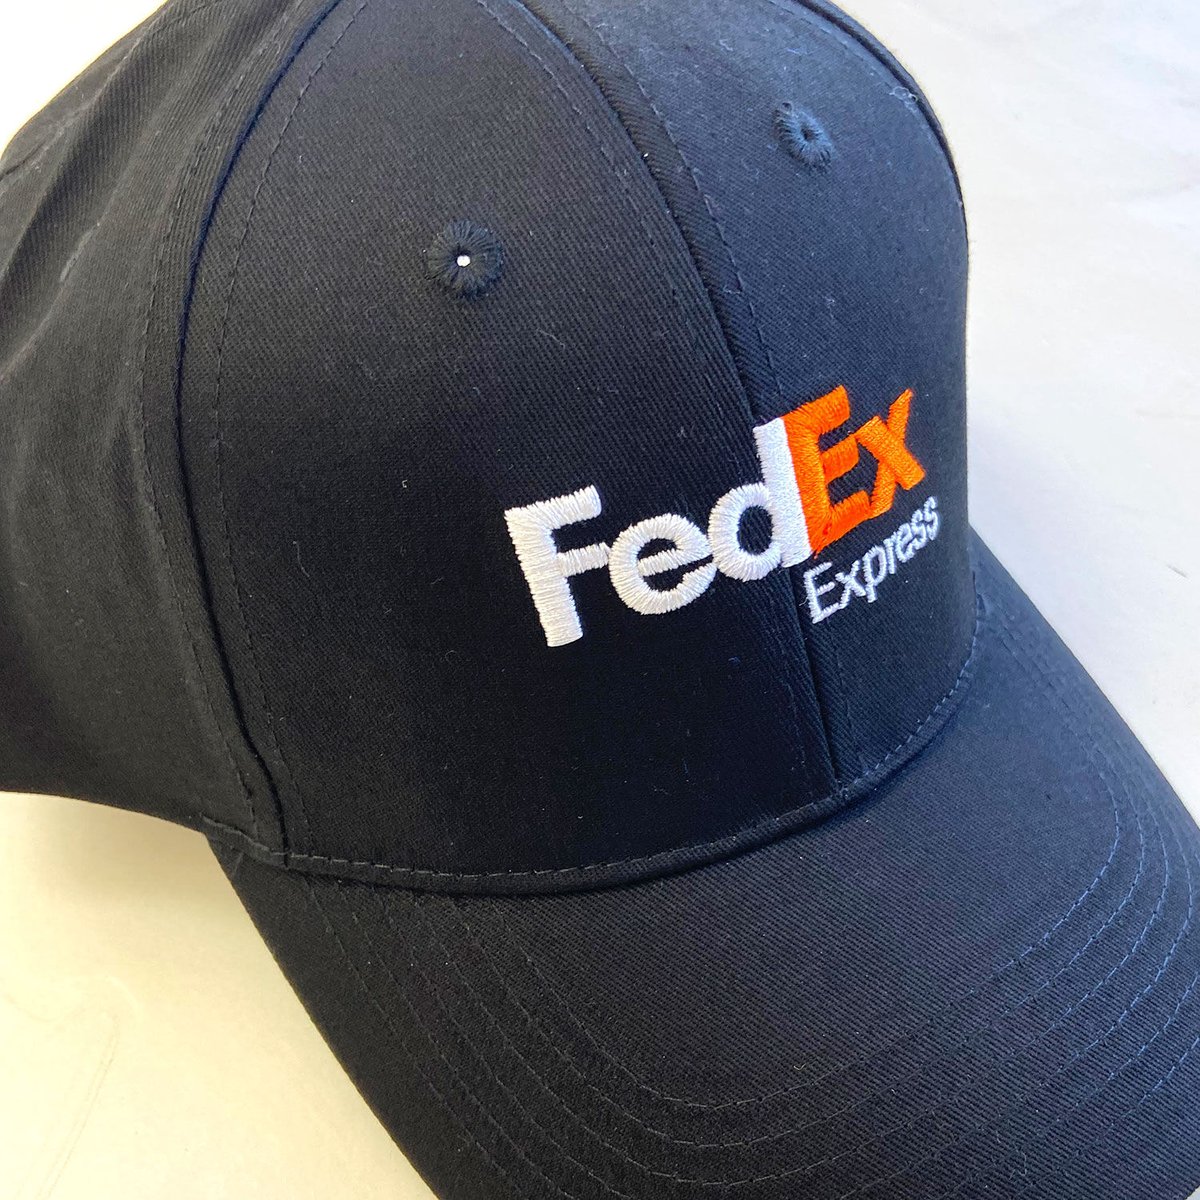 Fed EX 企業 モノ 刺繍 キャップ ネイビー 紫